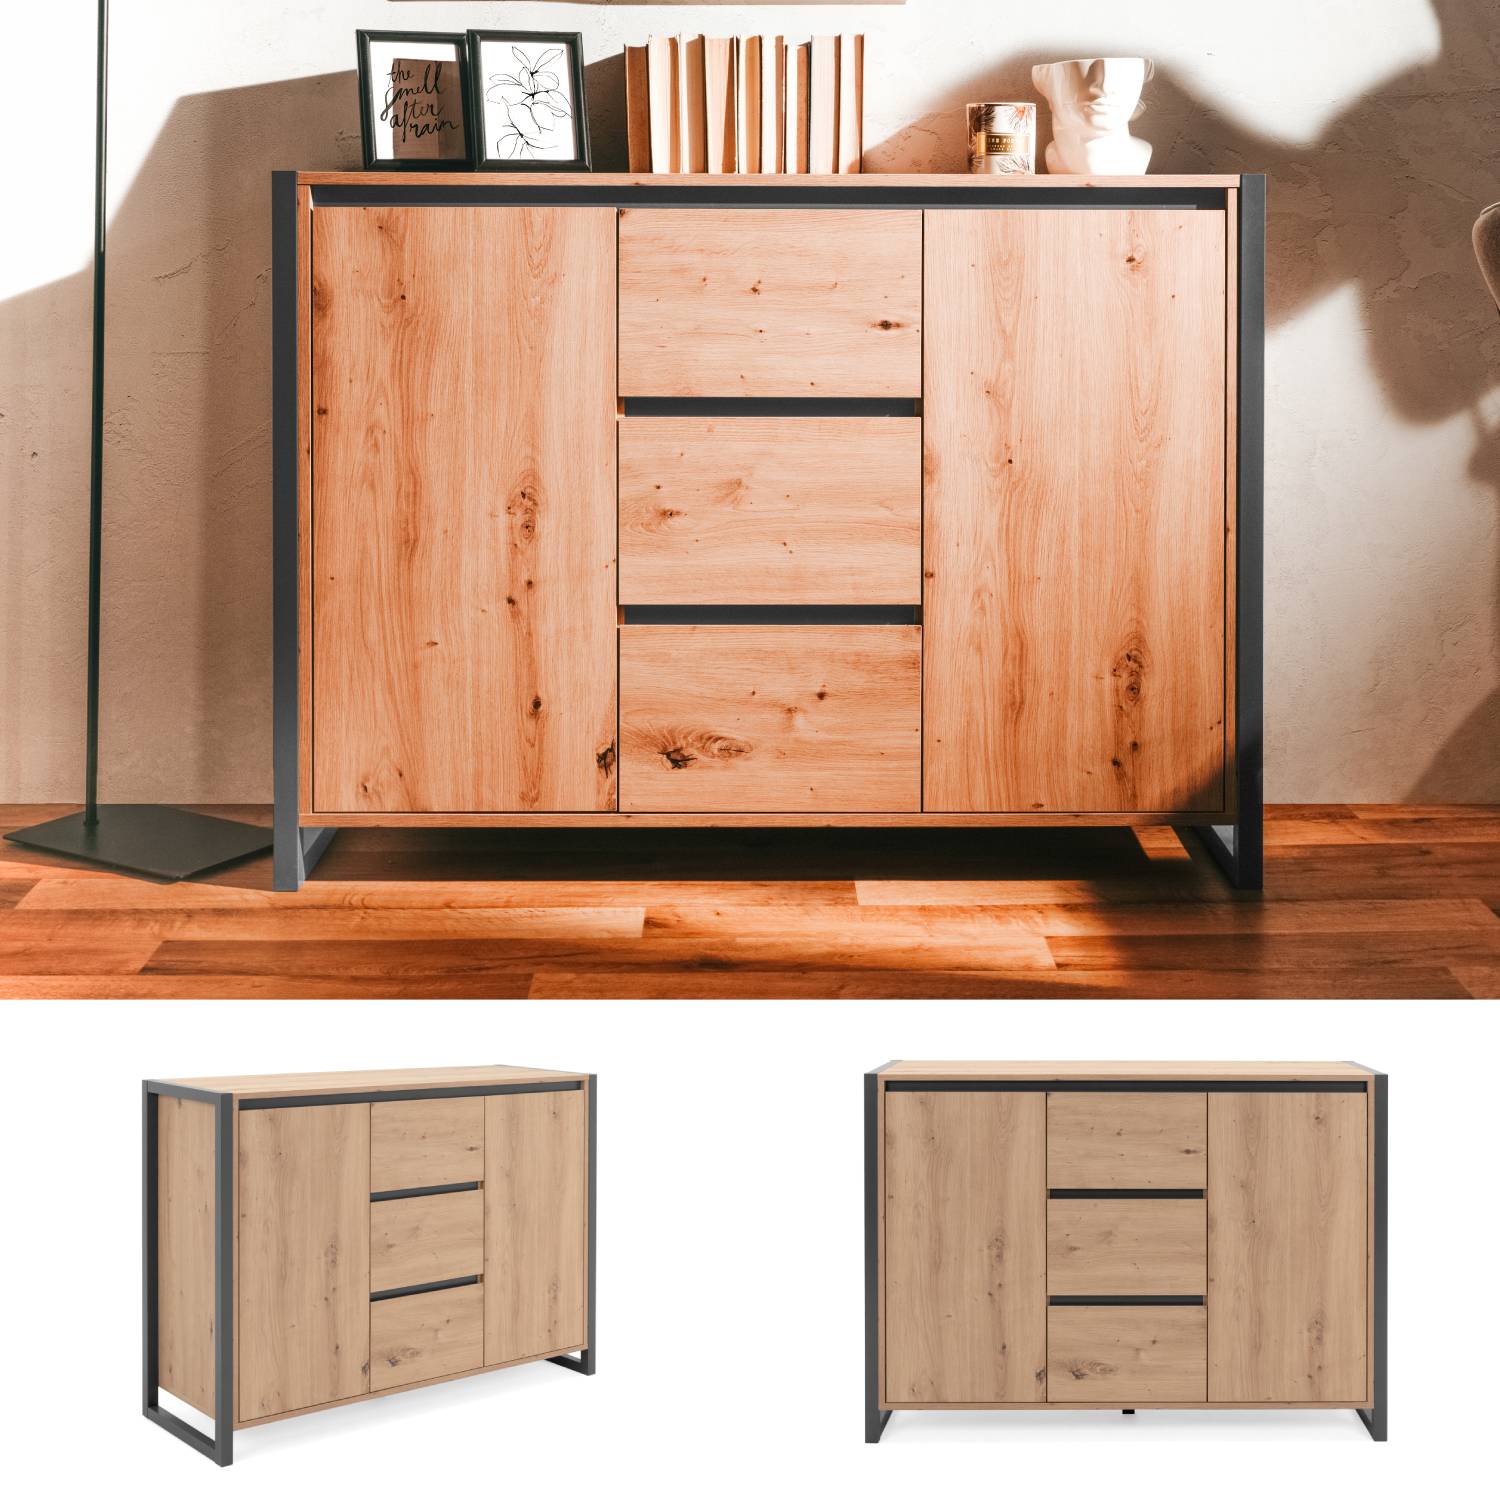 Kommode Sideboard Anrichte Schrank mit Schubladen Wohnzimmerschrank Beistellschrank Holz Industrial Look